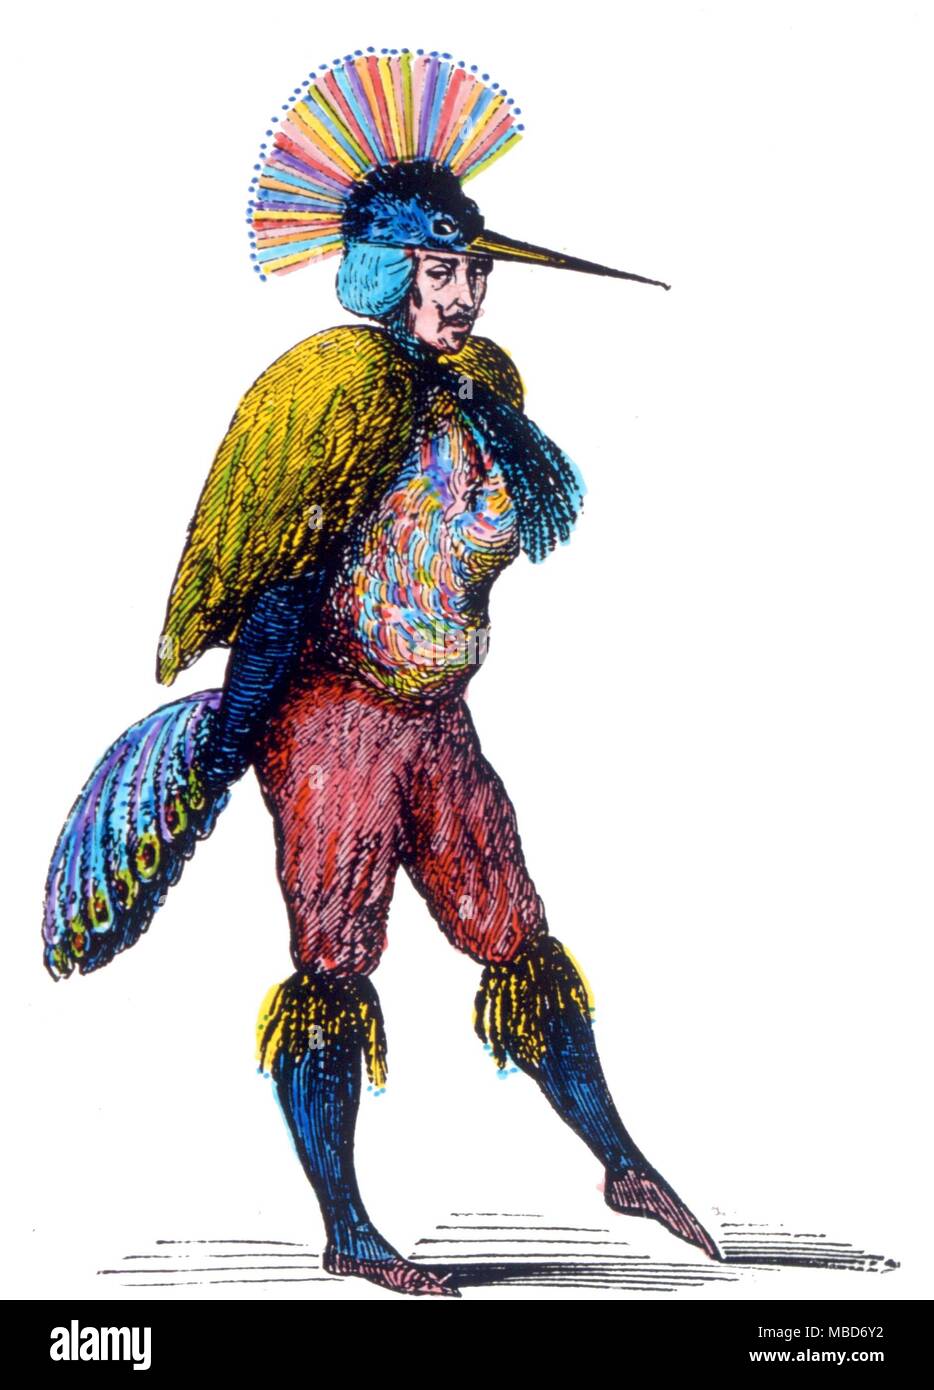 Caym que manifiesta cuando evocaba en parte en forma de un pavo real. De Collin de Plancy's Dictionnaire Infernal - 1863 edition Foto de stock